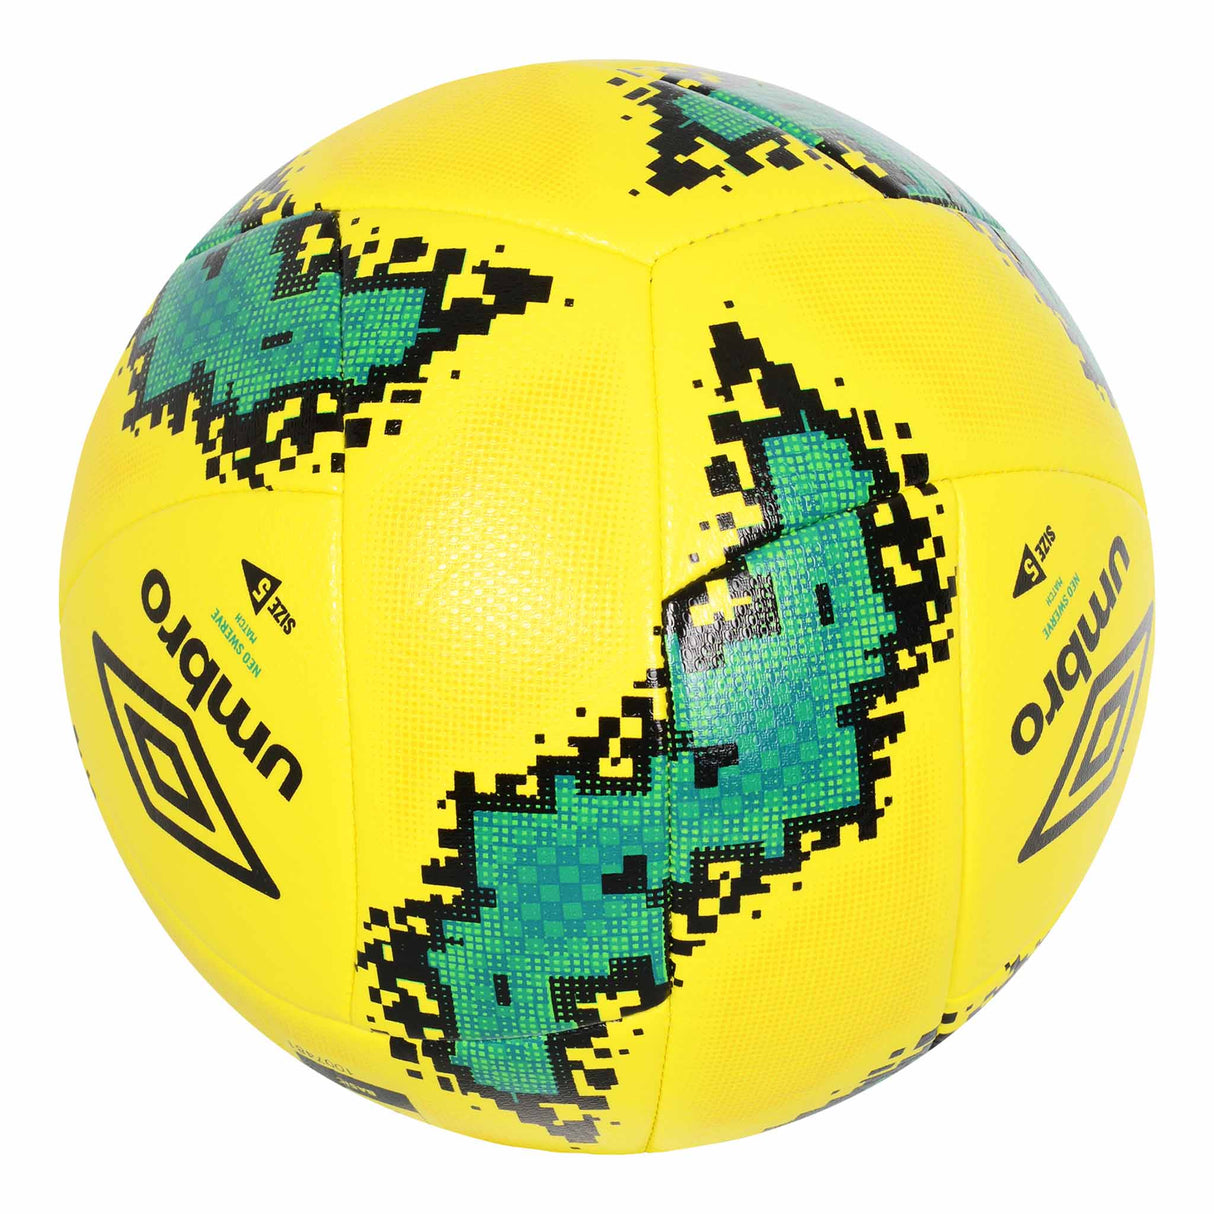 Umbro Neo Swerve Match ballon de soccer - Jaune / Vert